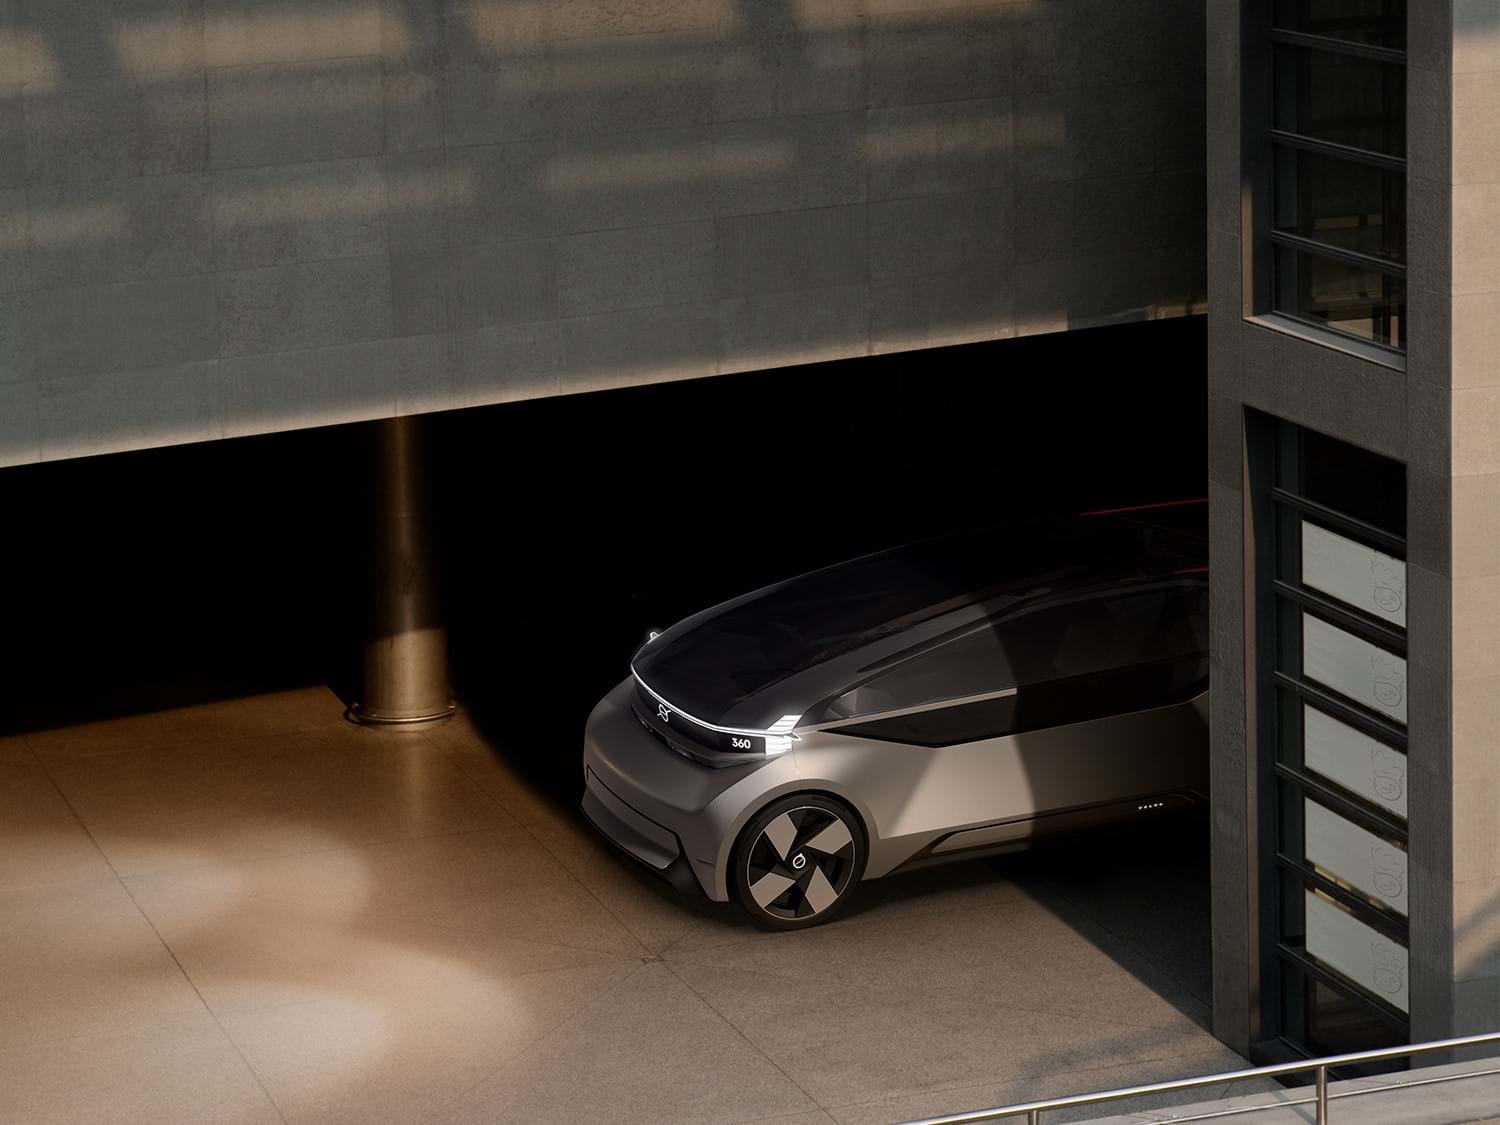 Volvo 360c menet közben egy parkolóházban.